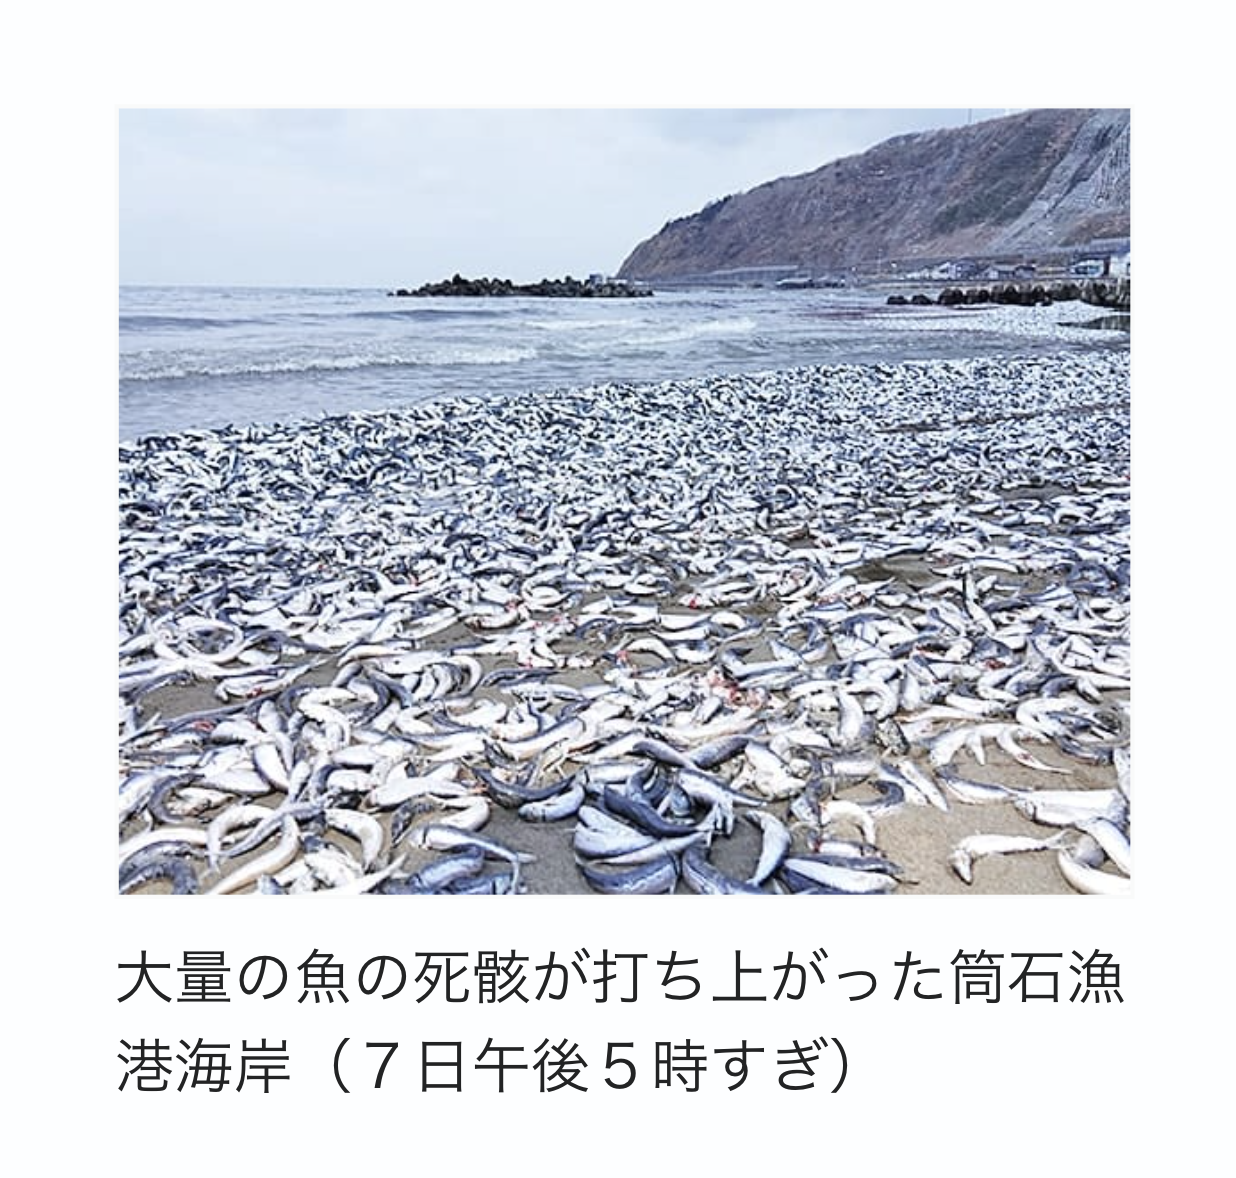 Dead fish in Japan